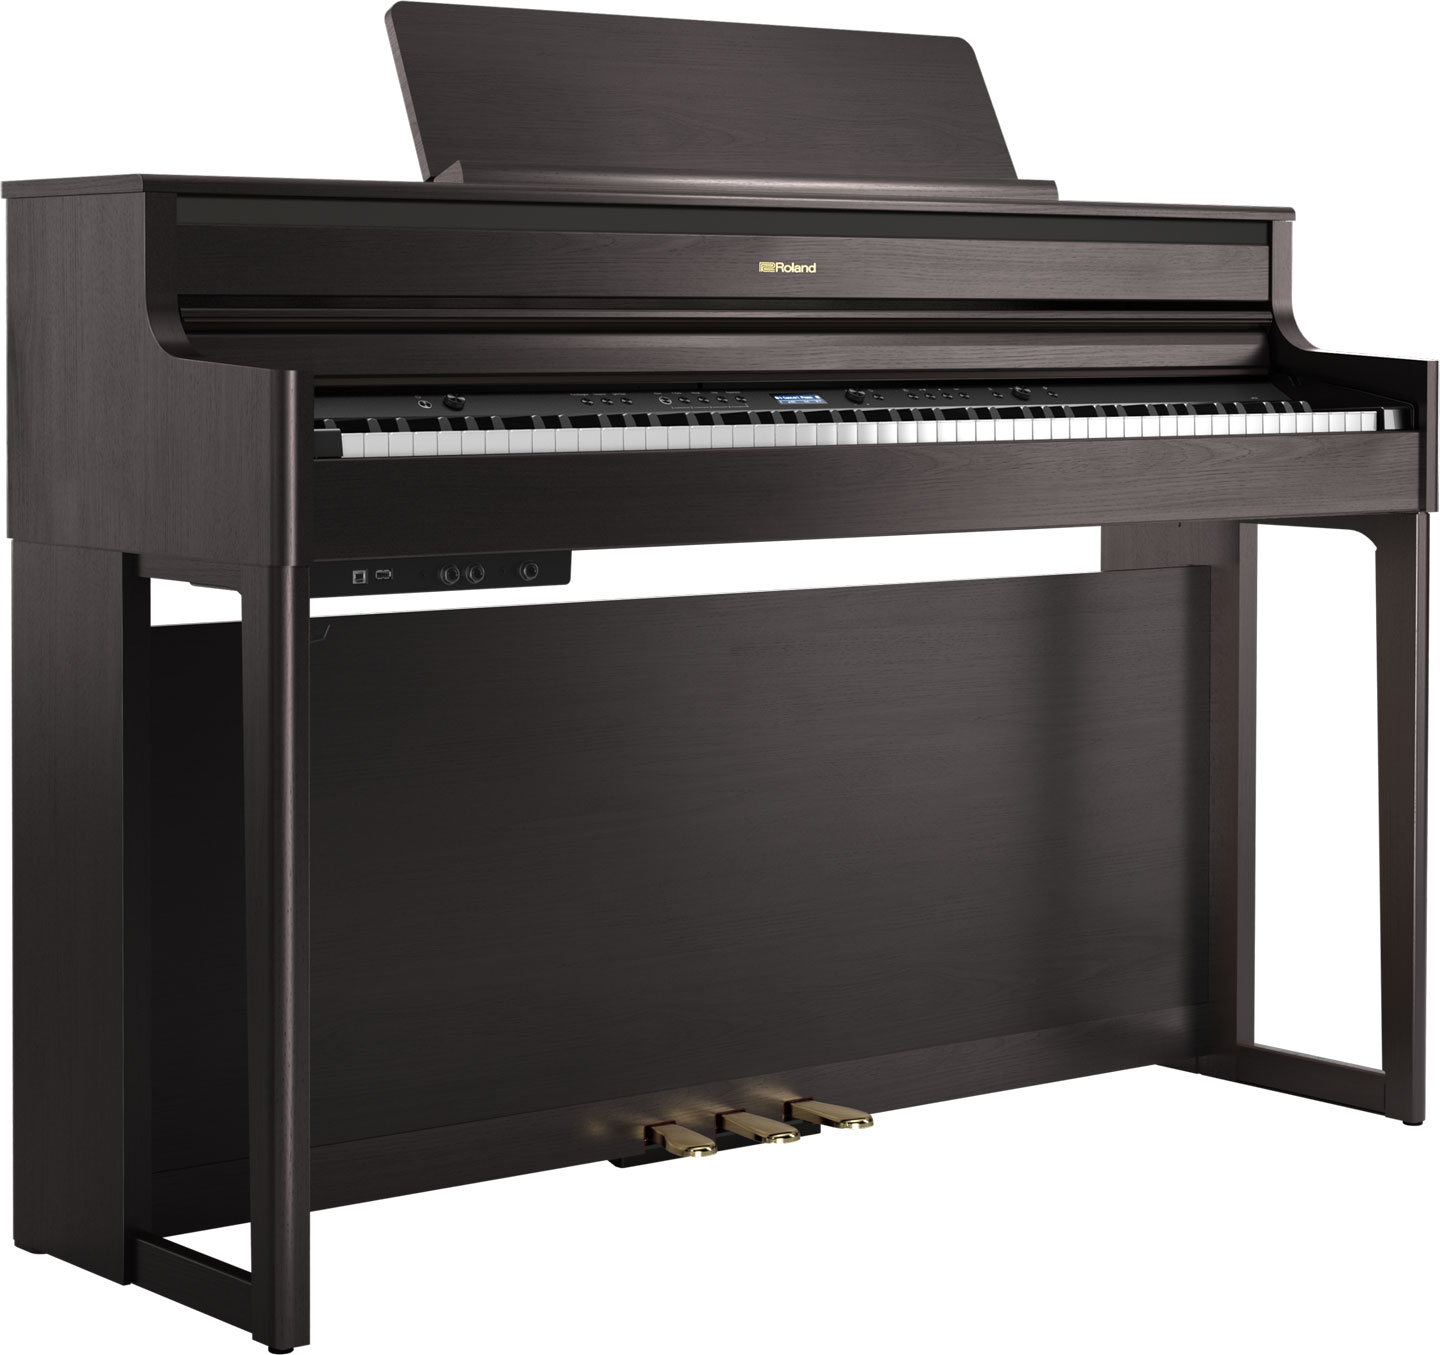 Rolandのホームデジタルピアノ HP700series「HP704/HP702」のご紹介！